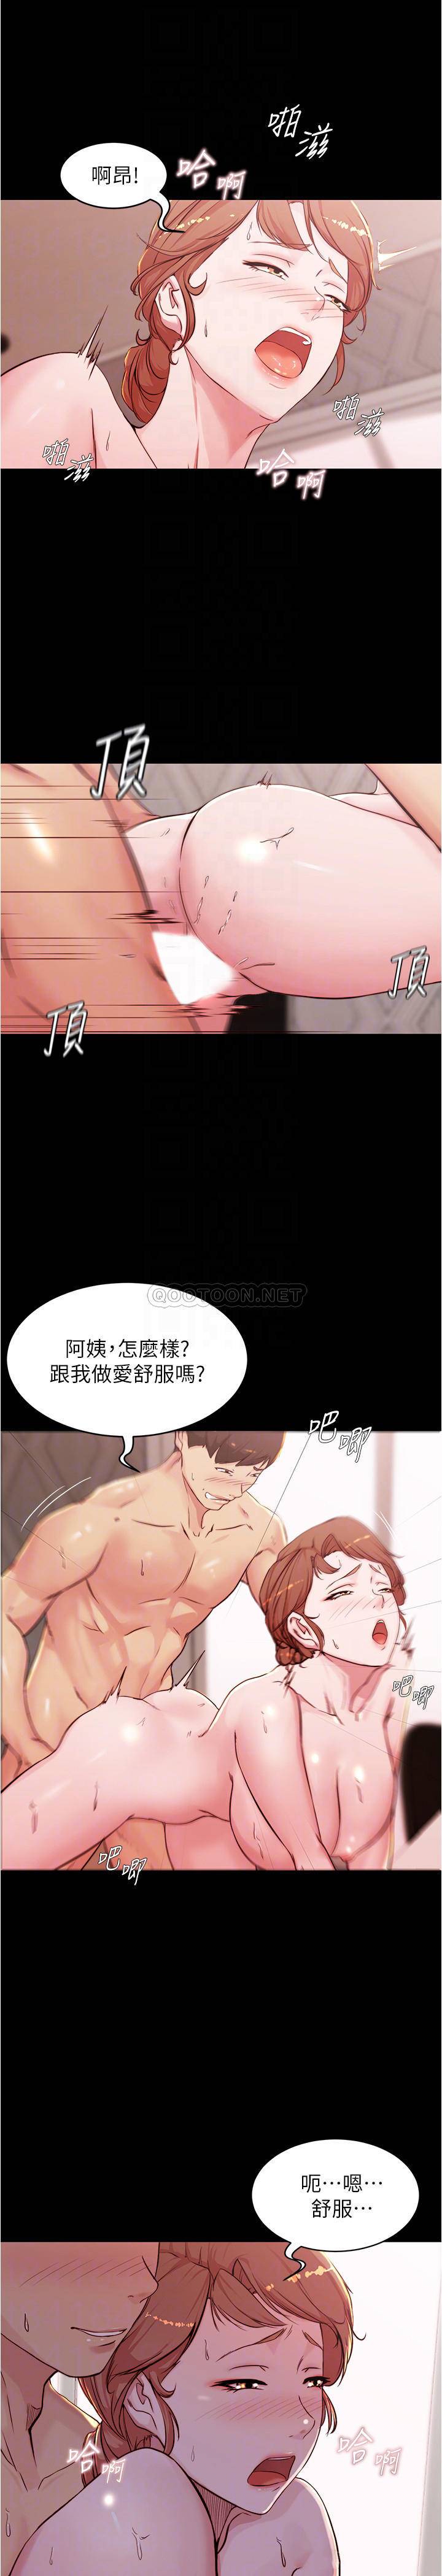 韩国污漫画 小褲褲筆記 第30话 - 忘不掉的强烈快感 13